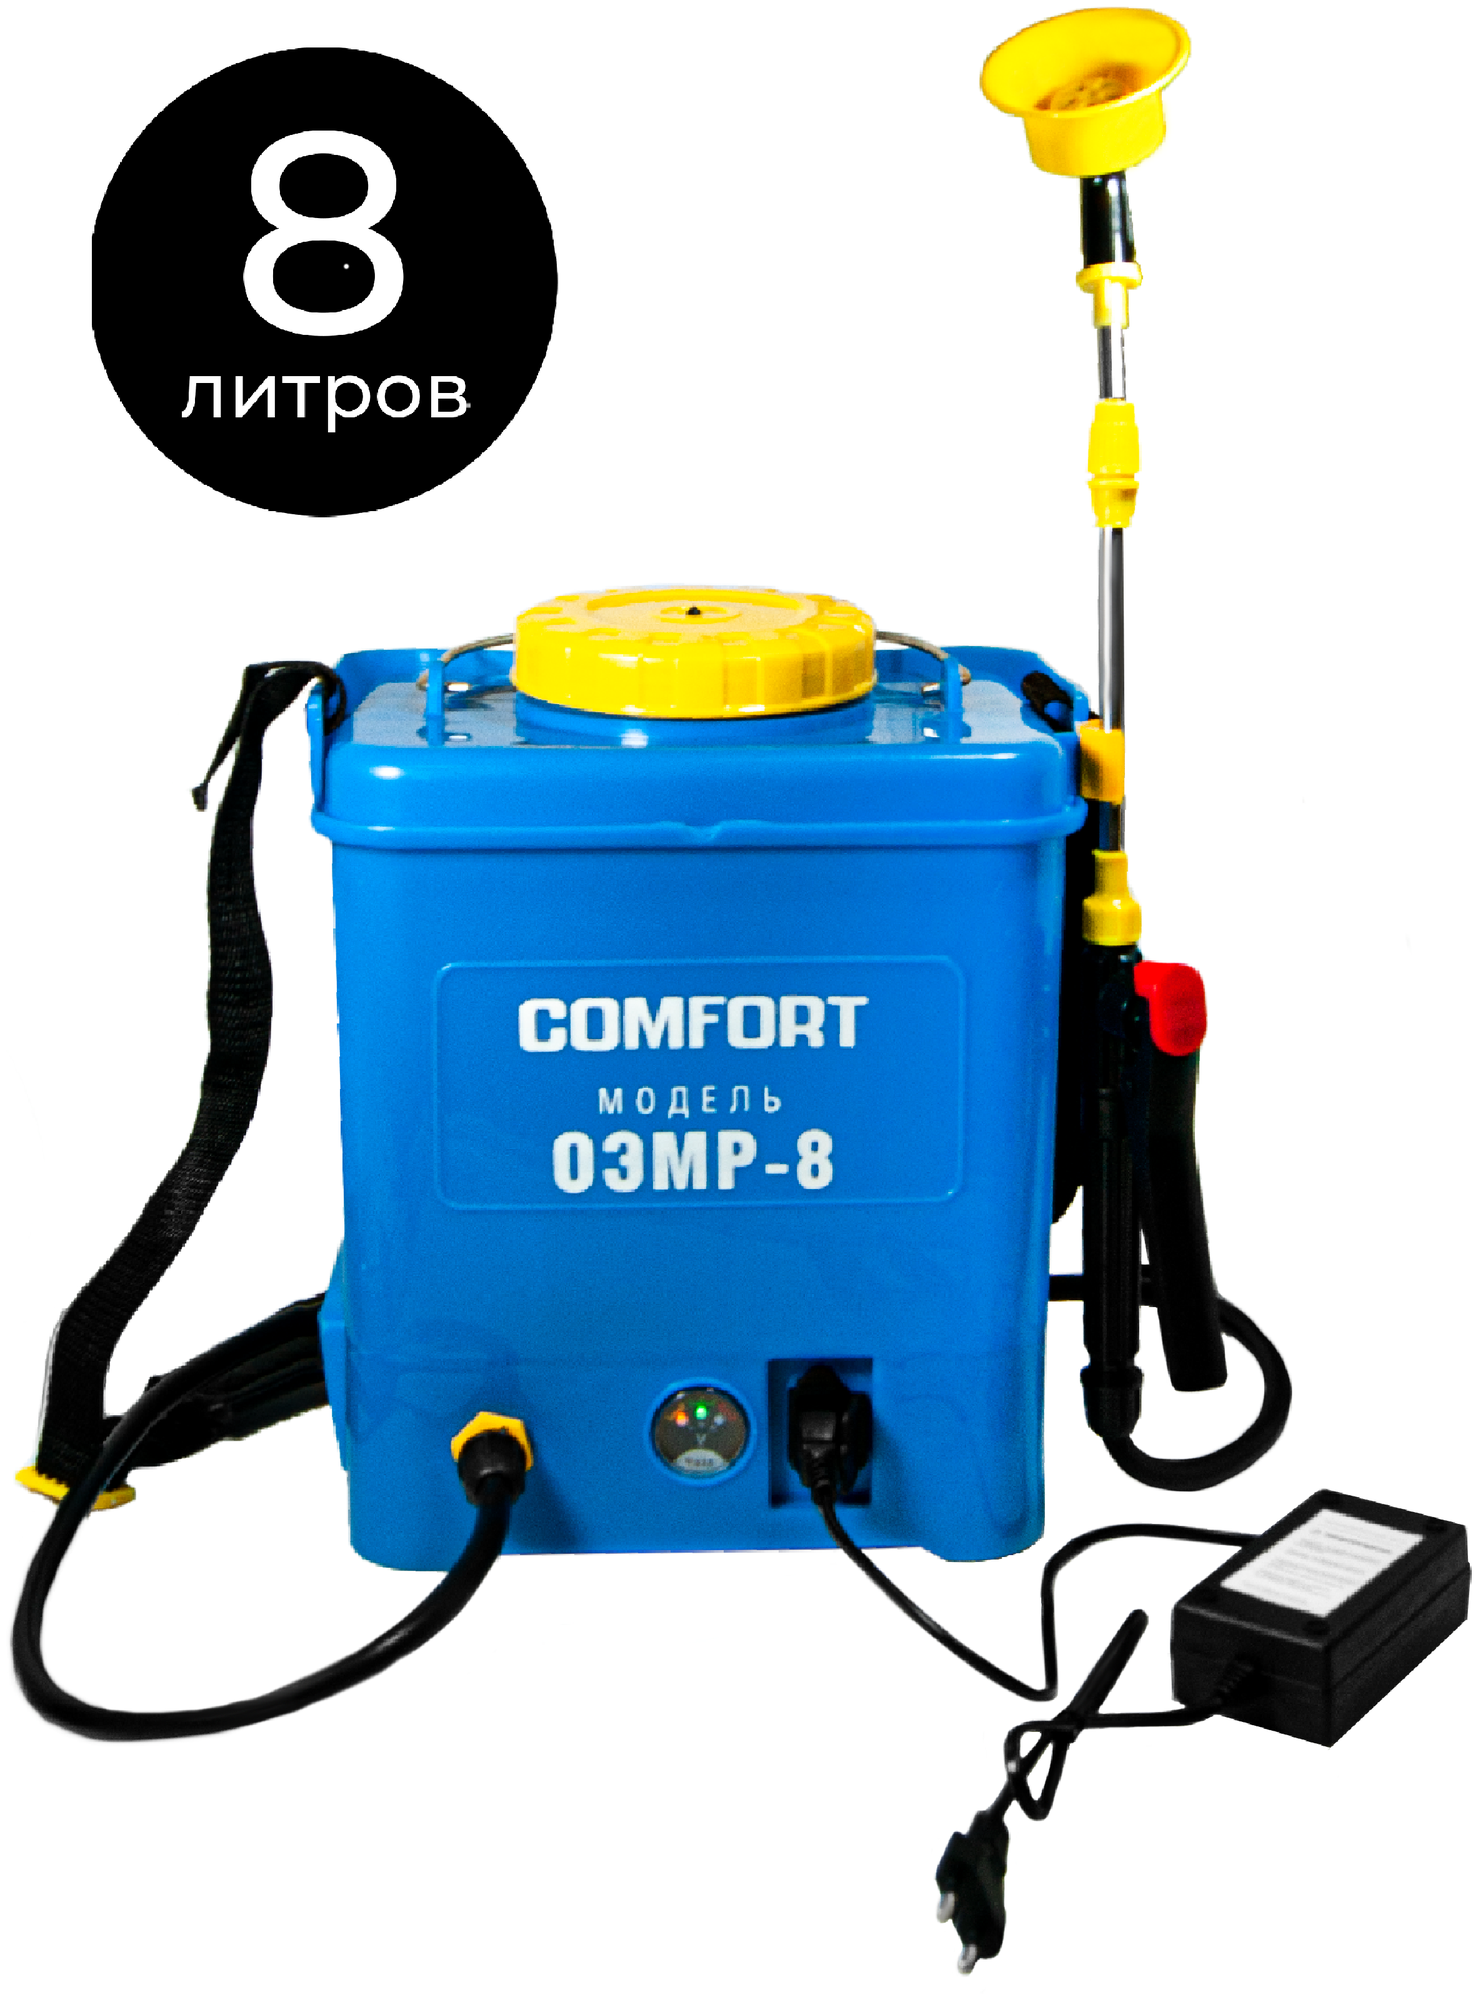 Опрыскиватель аккумуляторный 8 л, Comfort ОЭМР-8, шланг 1,2 м, удочка из нержавеющей стали, ранцевая система переноски, бытовой, электрический